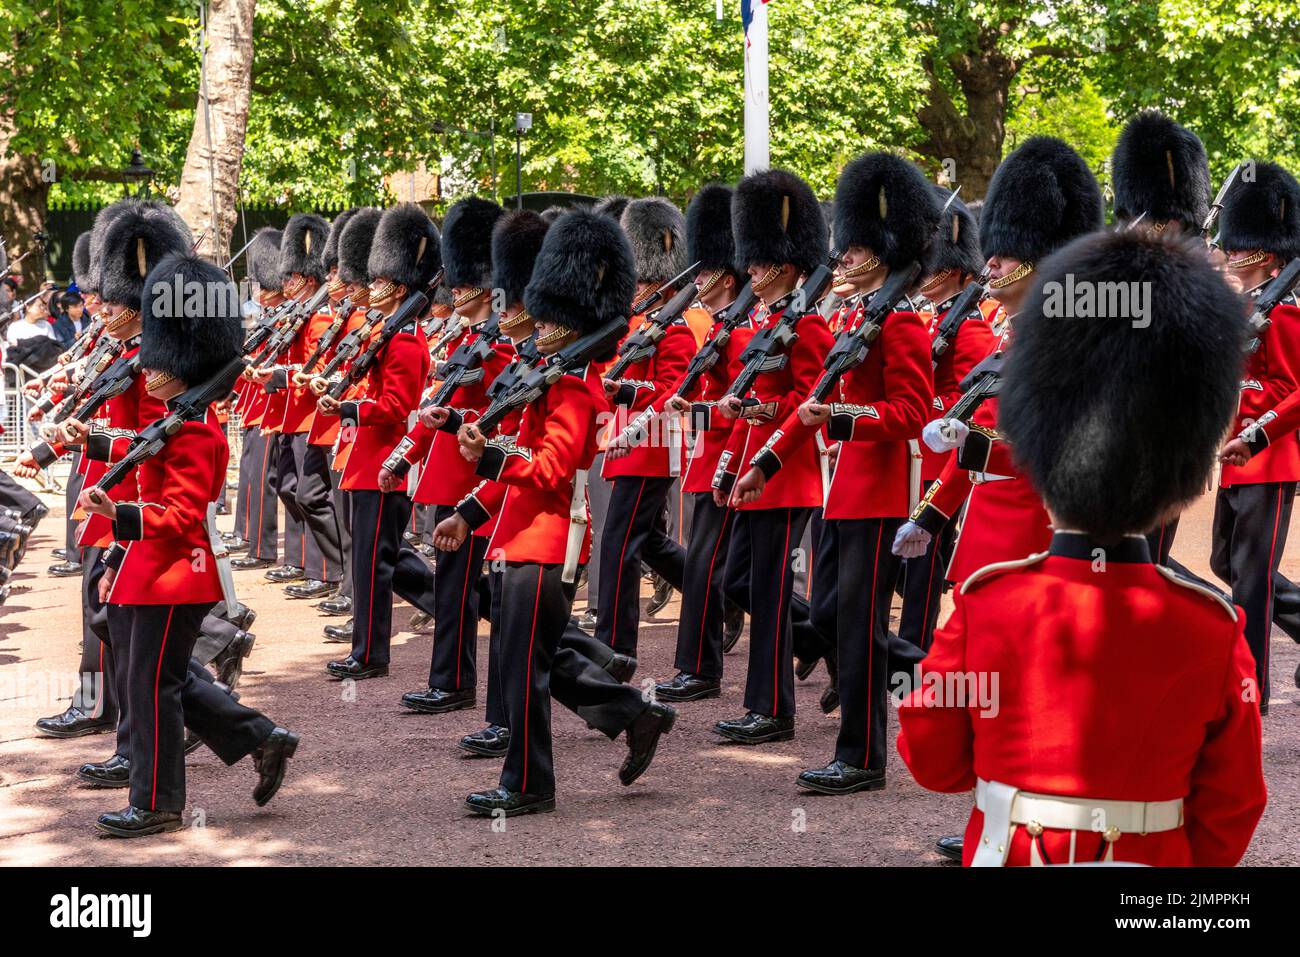 Los soldados del ejército británico marchan a lo largo del centro comercial después de participar en la ceremonia de Trooping the Colour, el desfile de cumpleaños de la reina, Londres, Reino Unido. Foto de stock